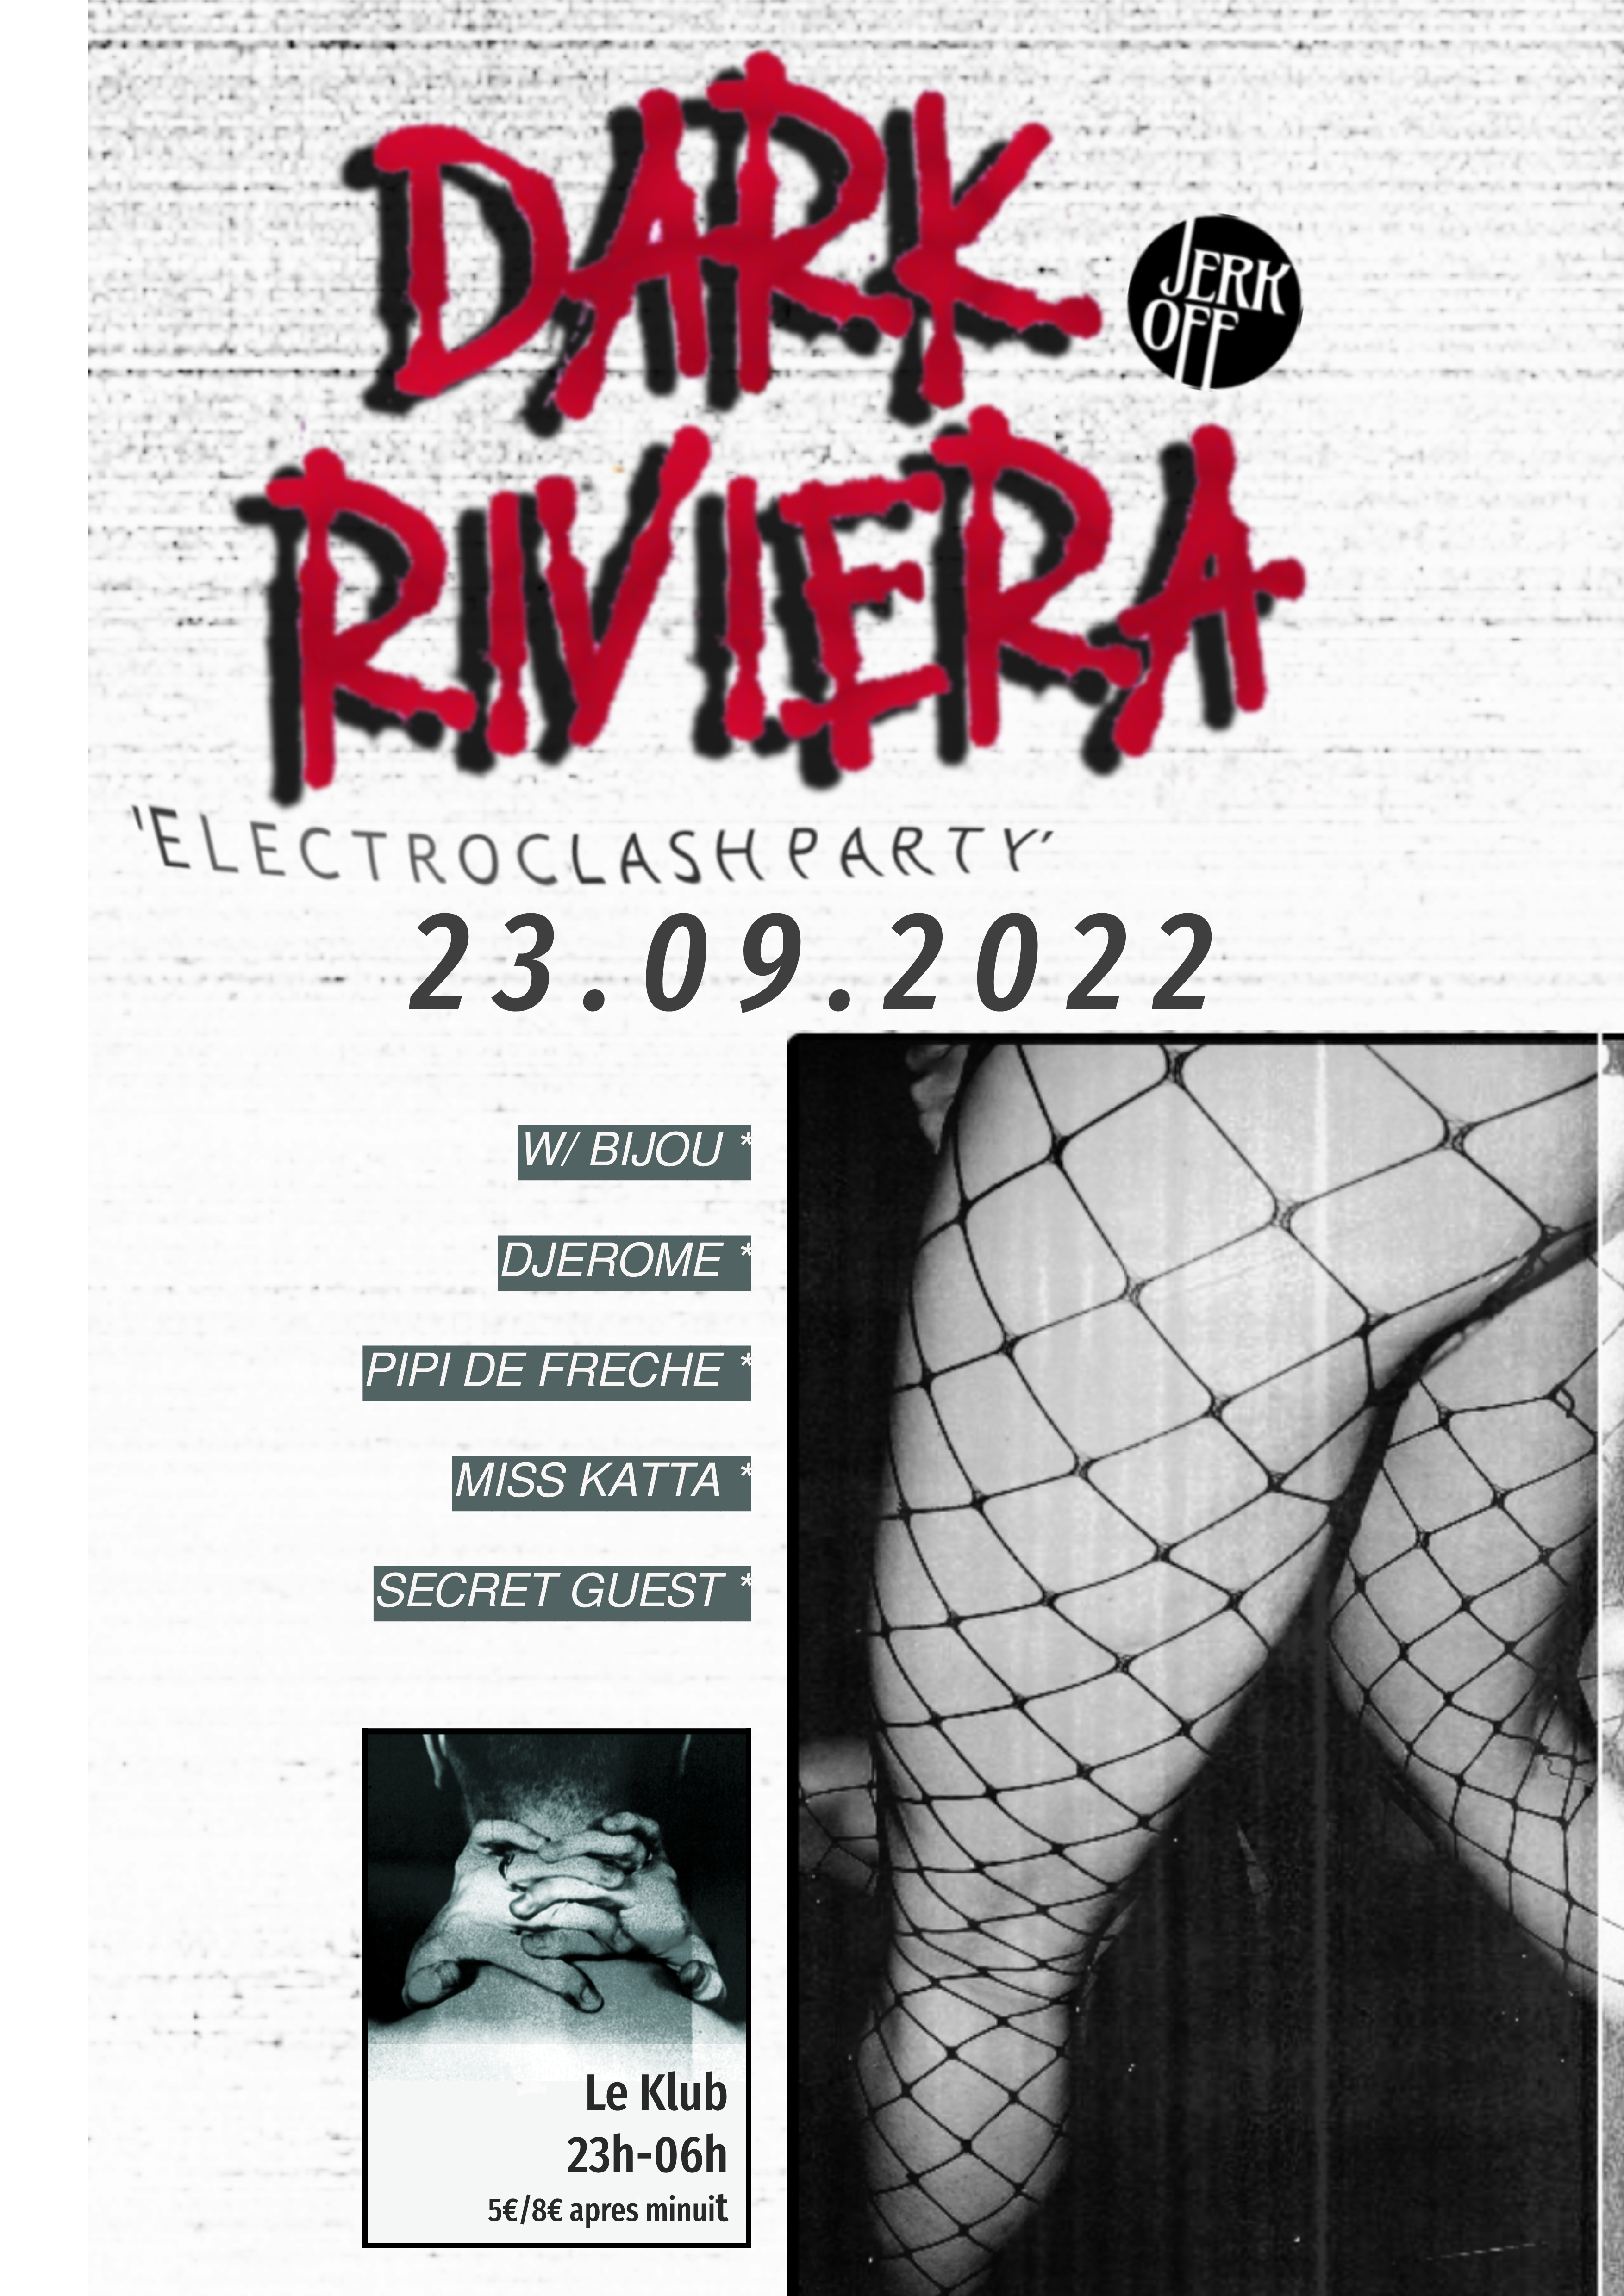 DARK RIVIERA ■ 23.09